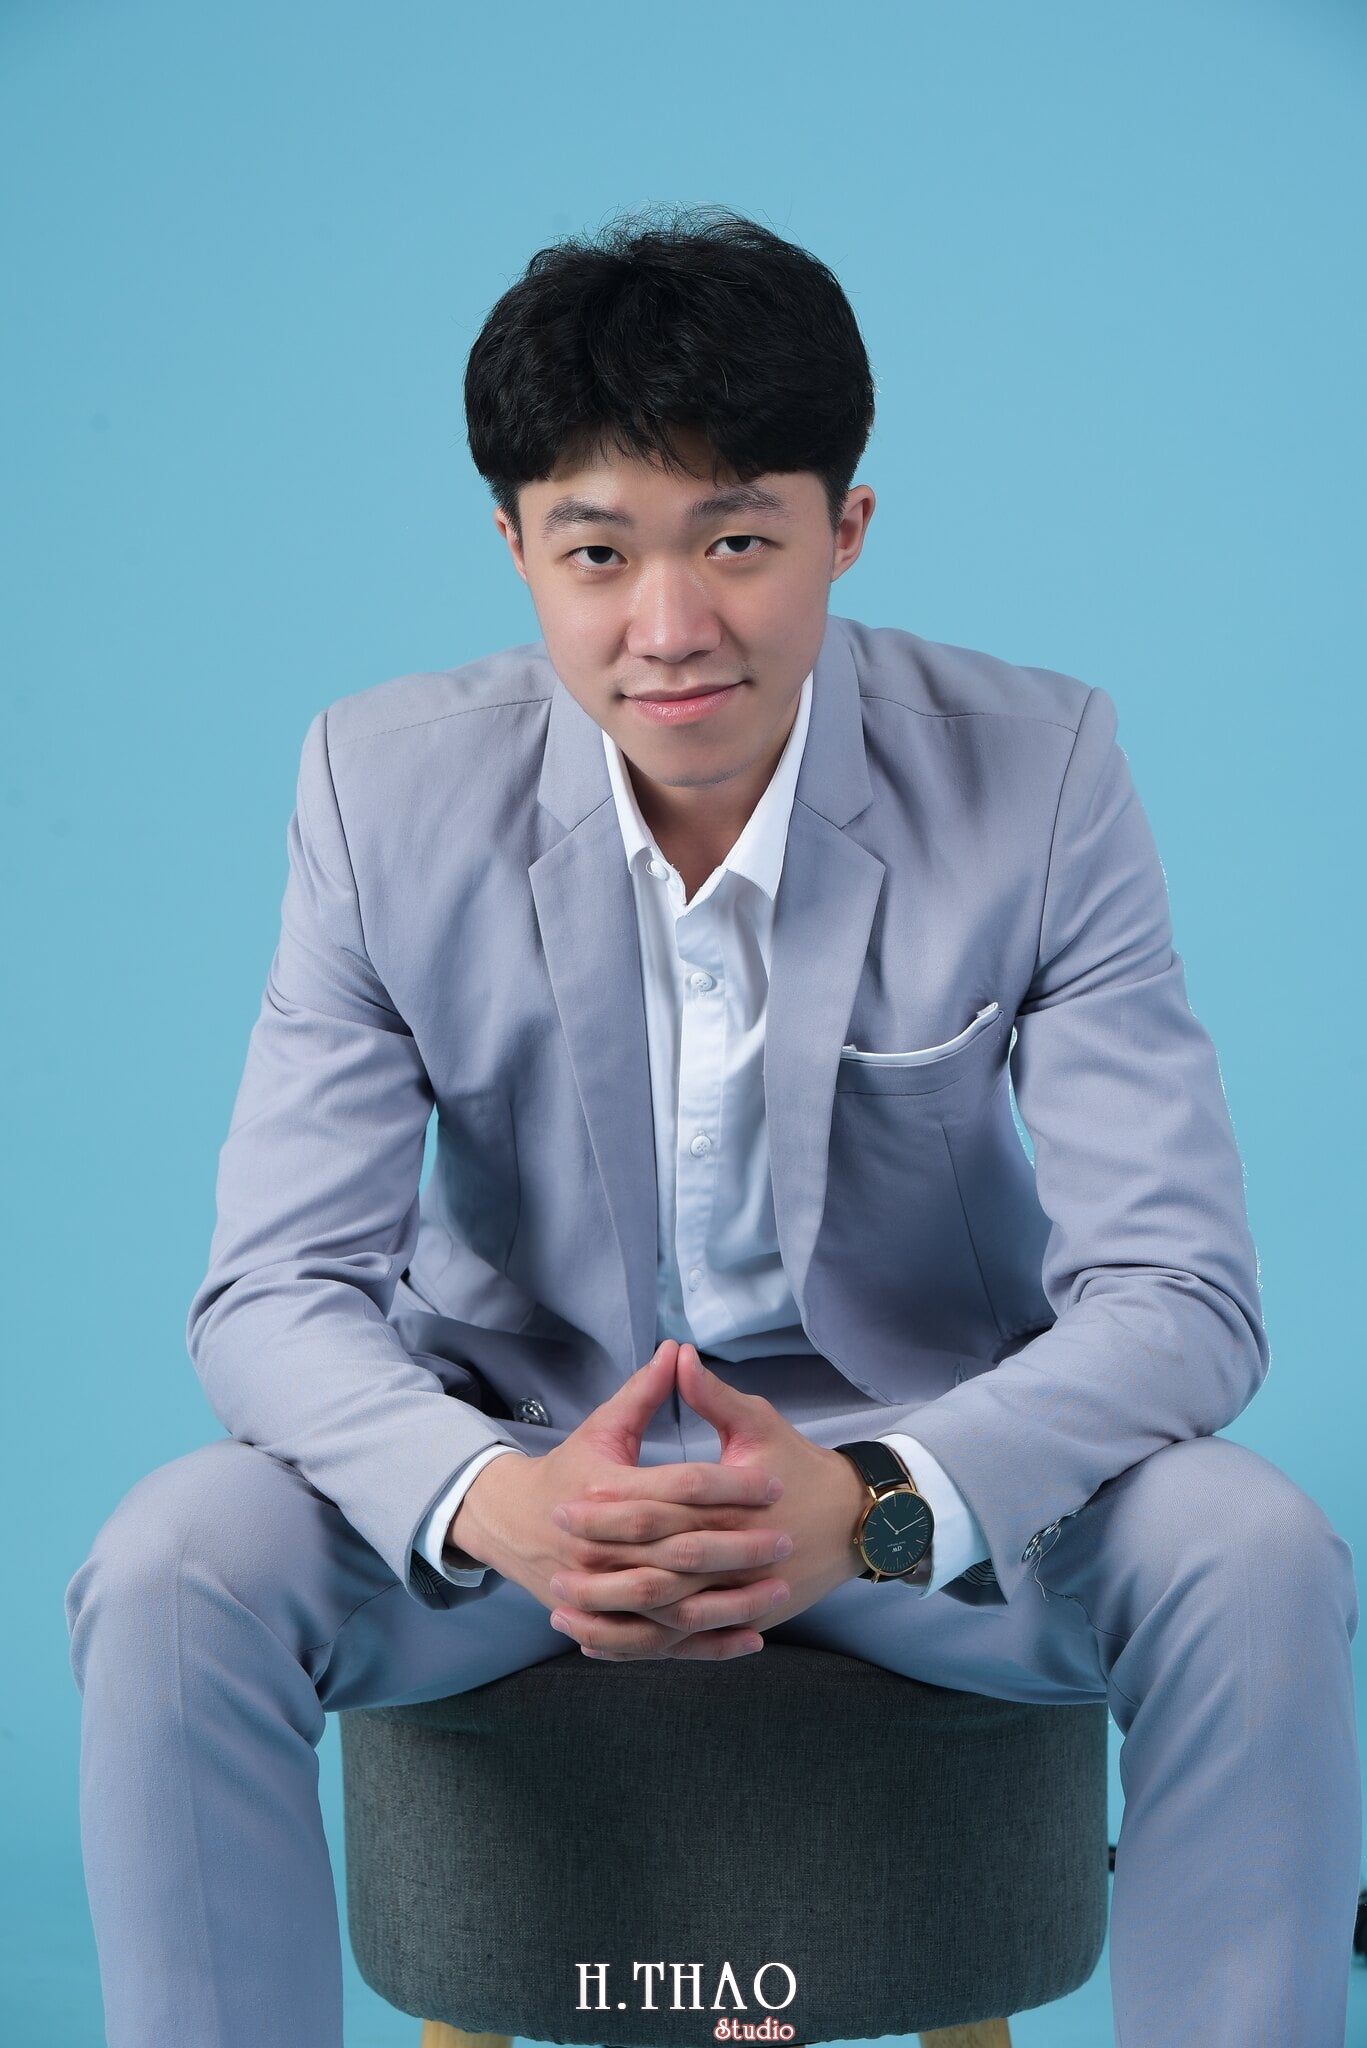 Thanh dat xanh 10 - Chụp ảnh profile nhân viên bất động sản Đất Xanh - HThao Studio